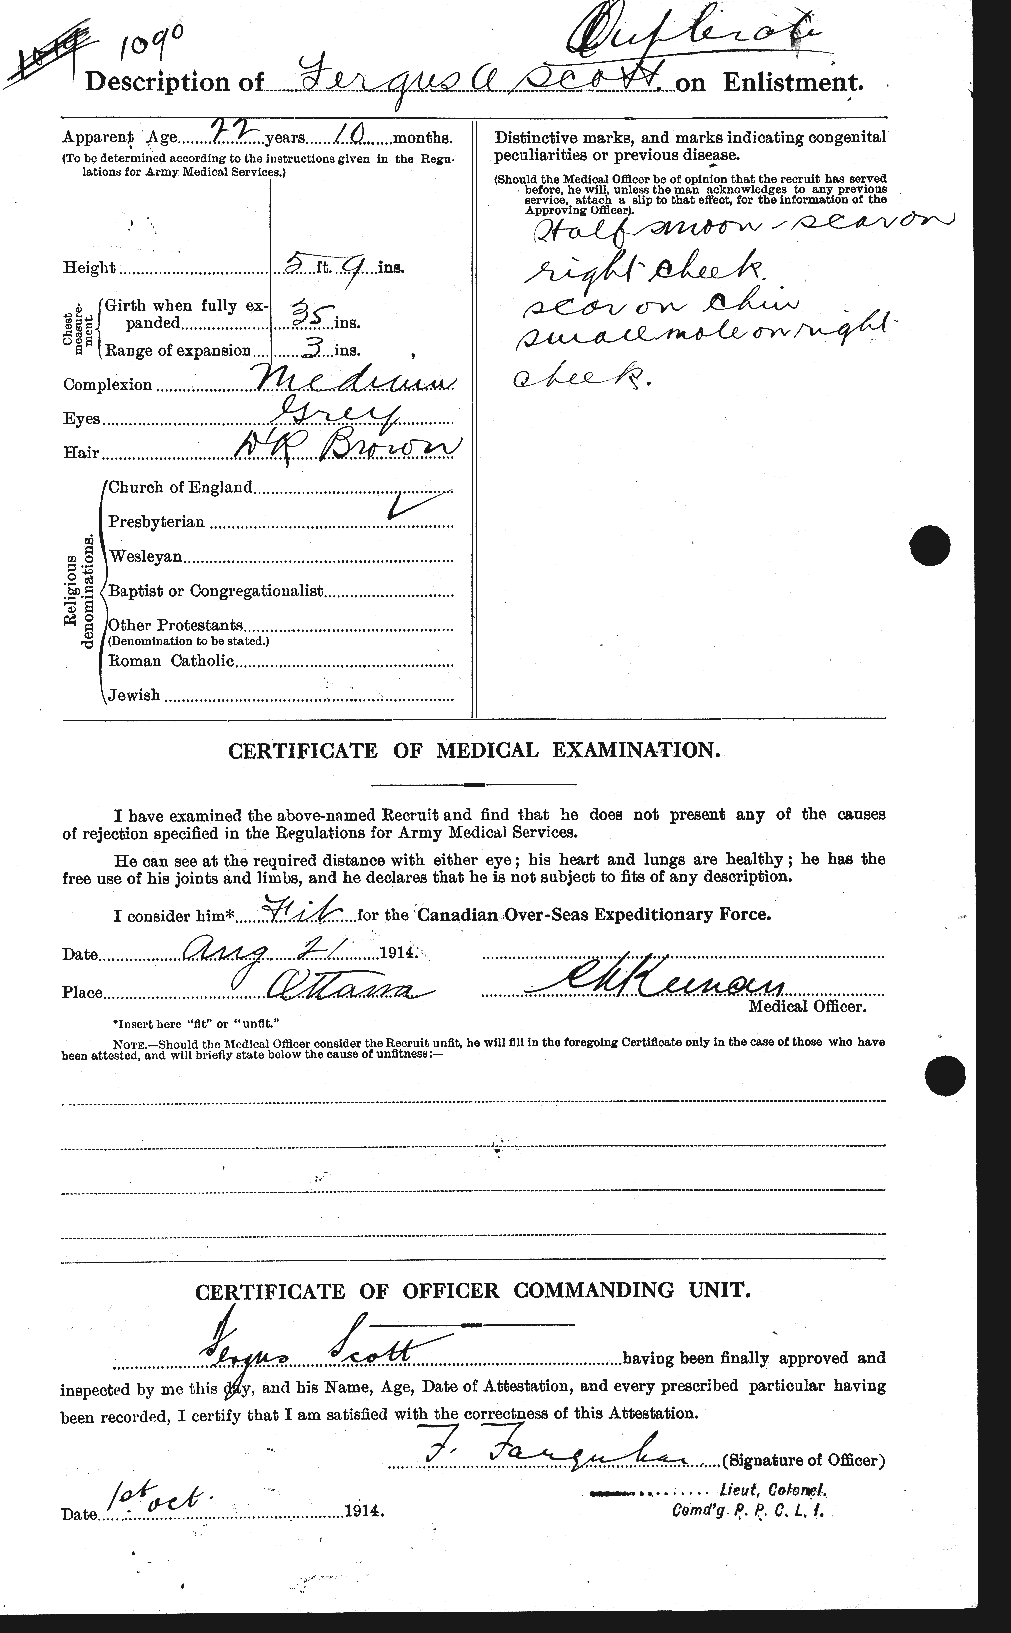 Dossiers du Personnel de la Première Guerre mondiale - CEC 084998b